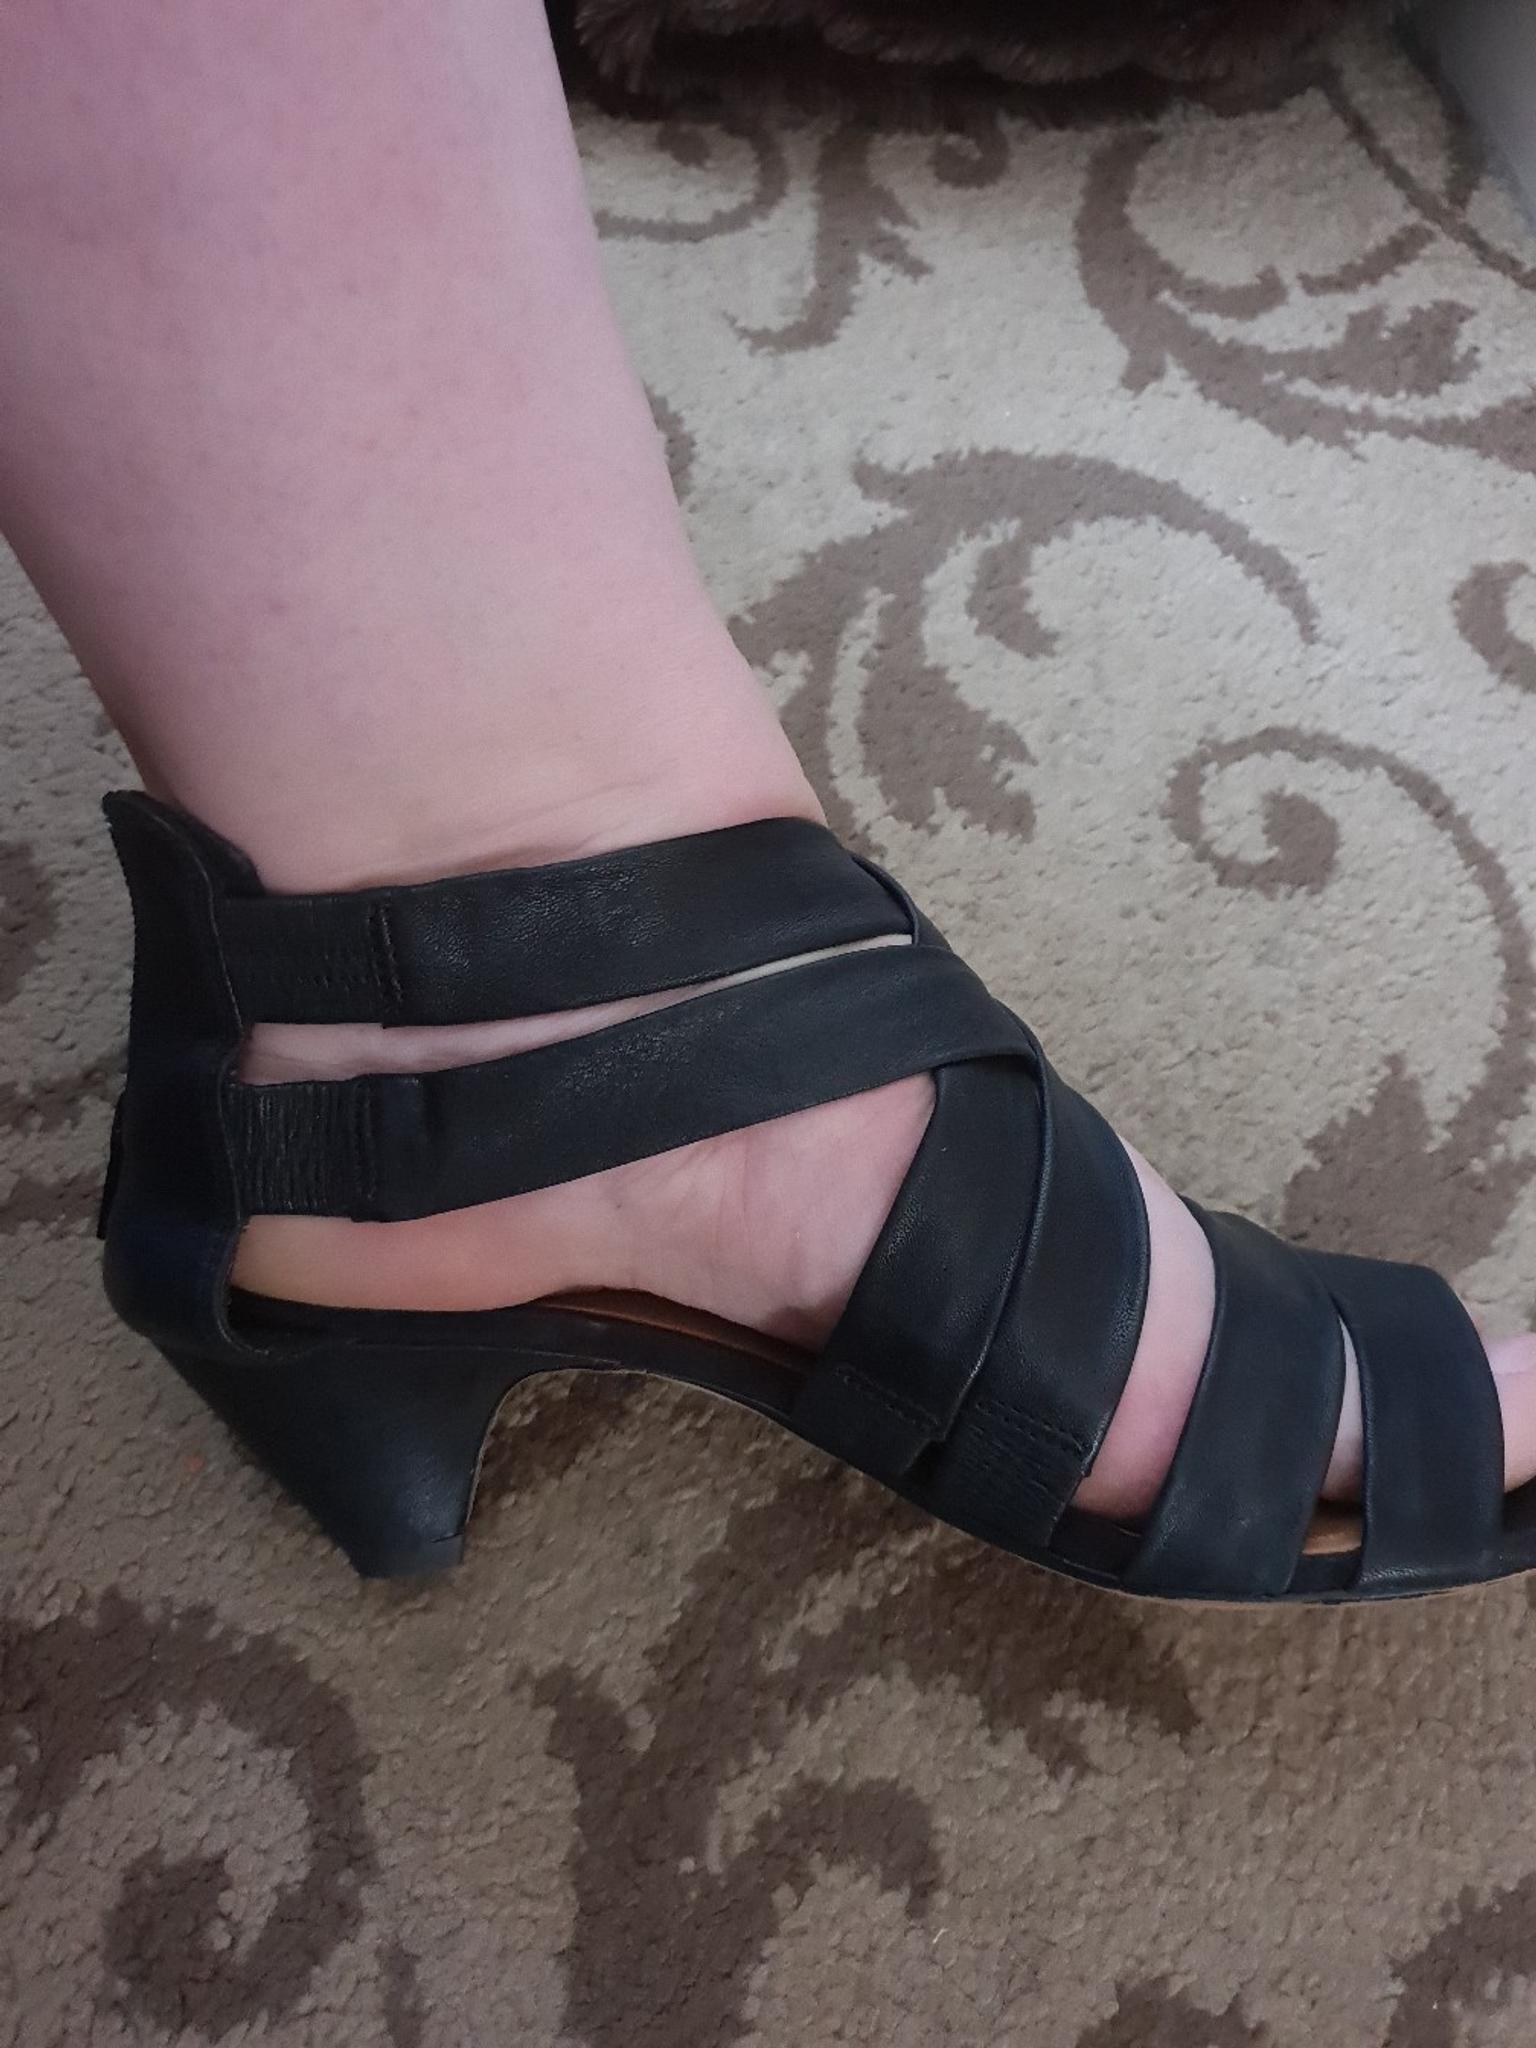 clarks ladies gladiator sandals